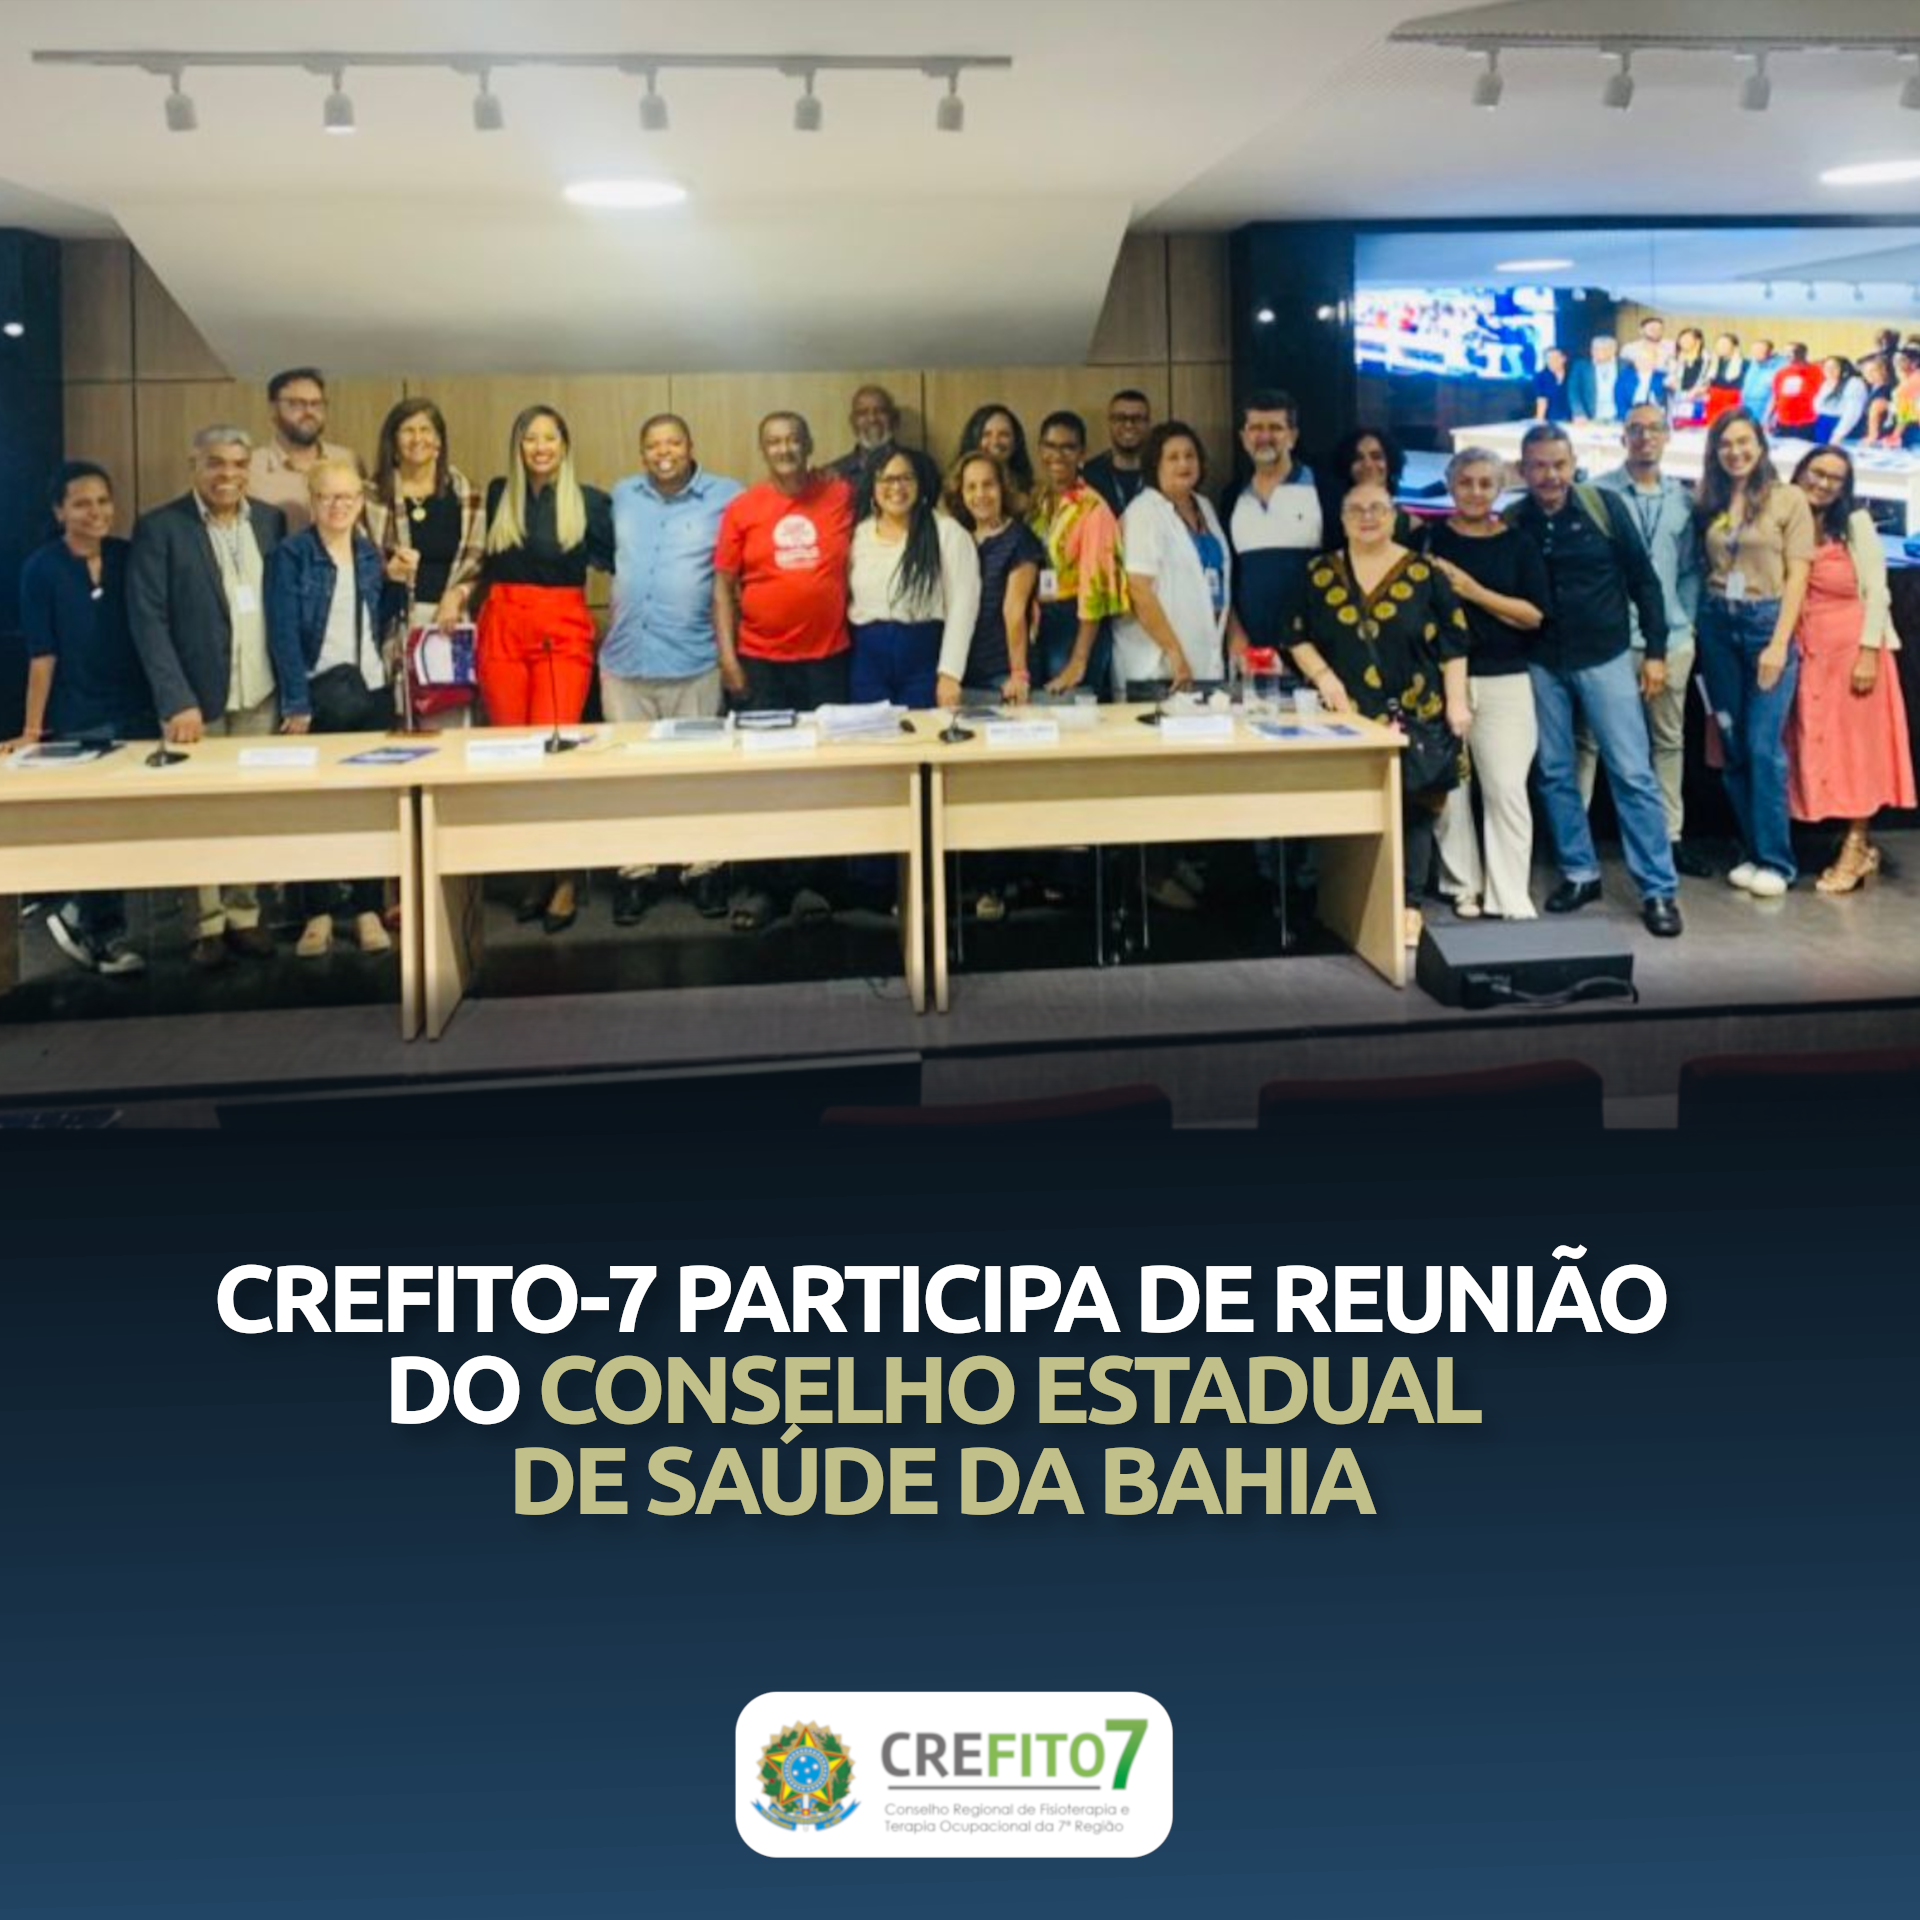 CREFITO-7 participa de reunião do Conselho Estadual de Saúde da Bahia